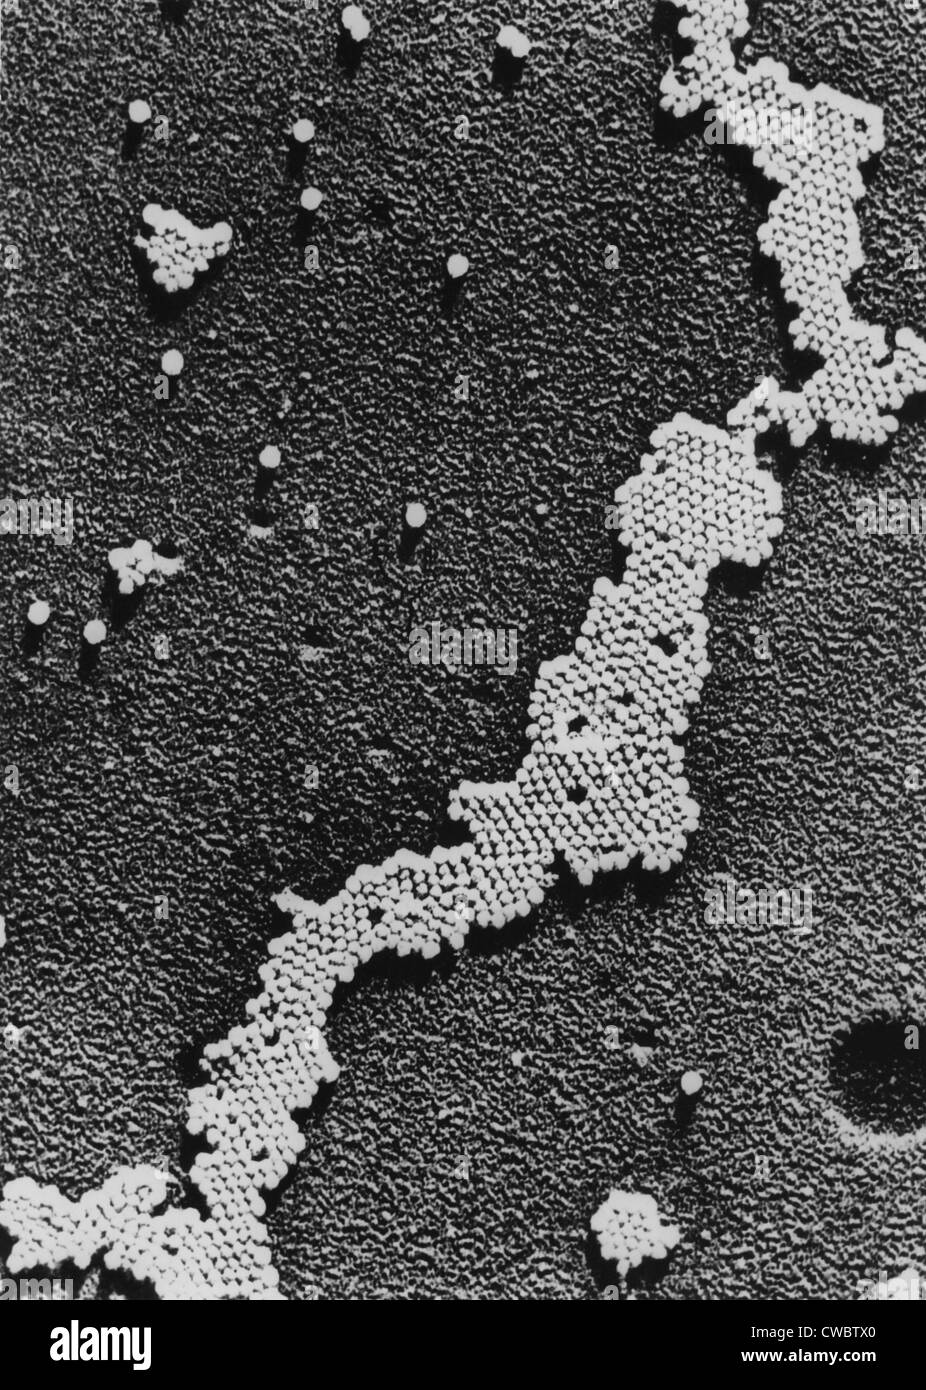 Kinderlähmung (Poliomyelitis) Virus, die Ursache der Kinderlähmung, wurde 1908 von Karl Landsteiner entdeckt. Der Impfstoff für Stockfoto